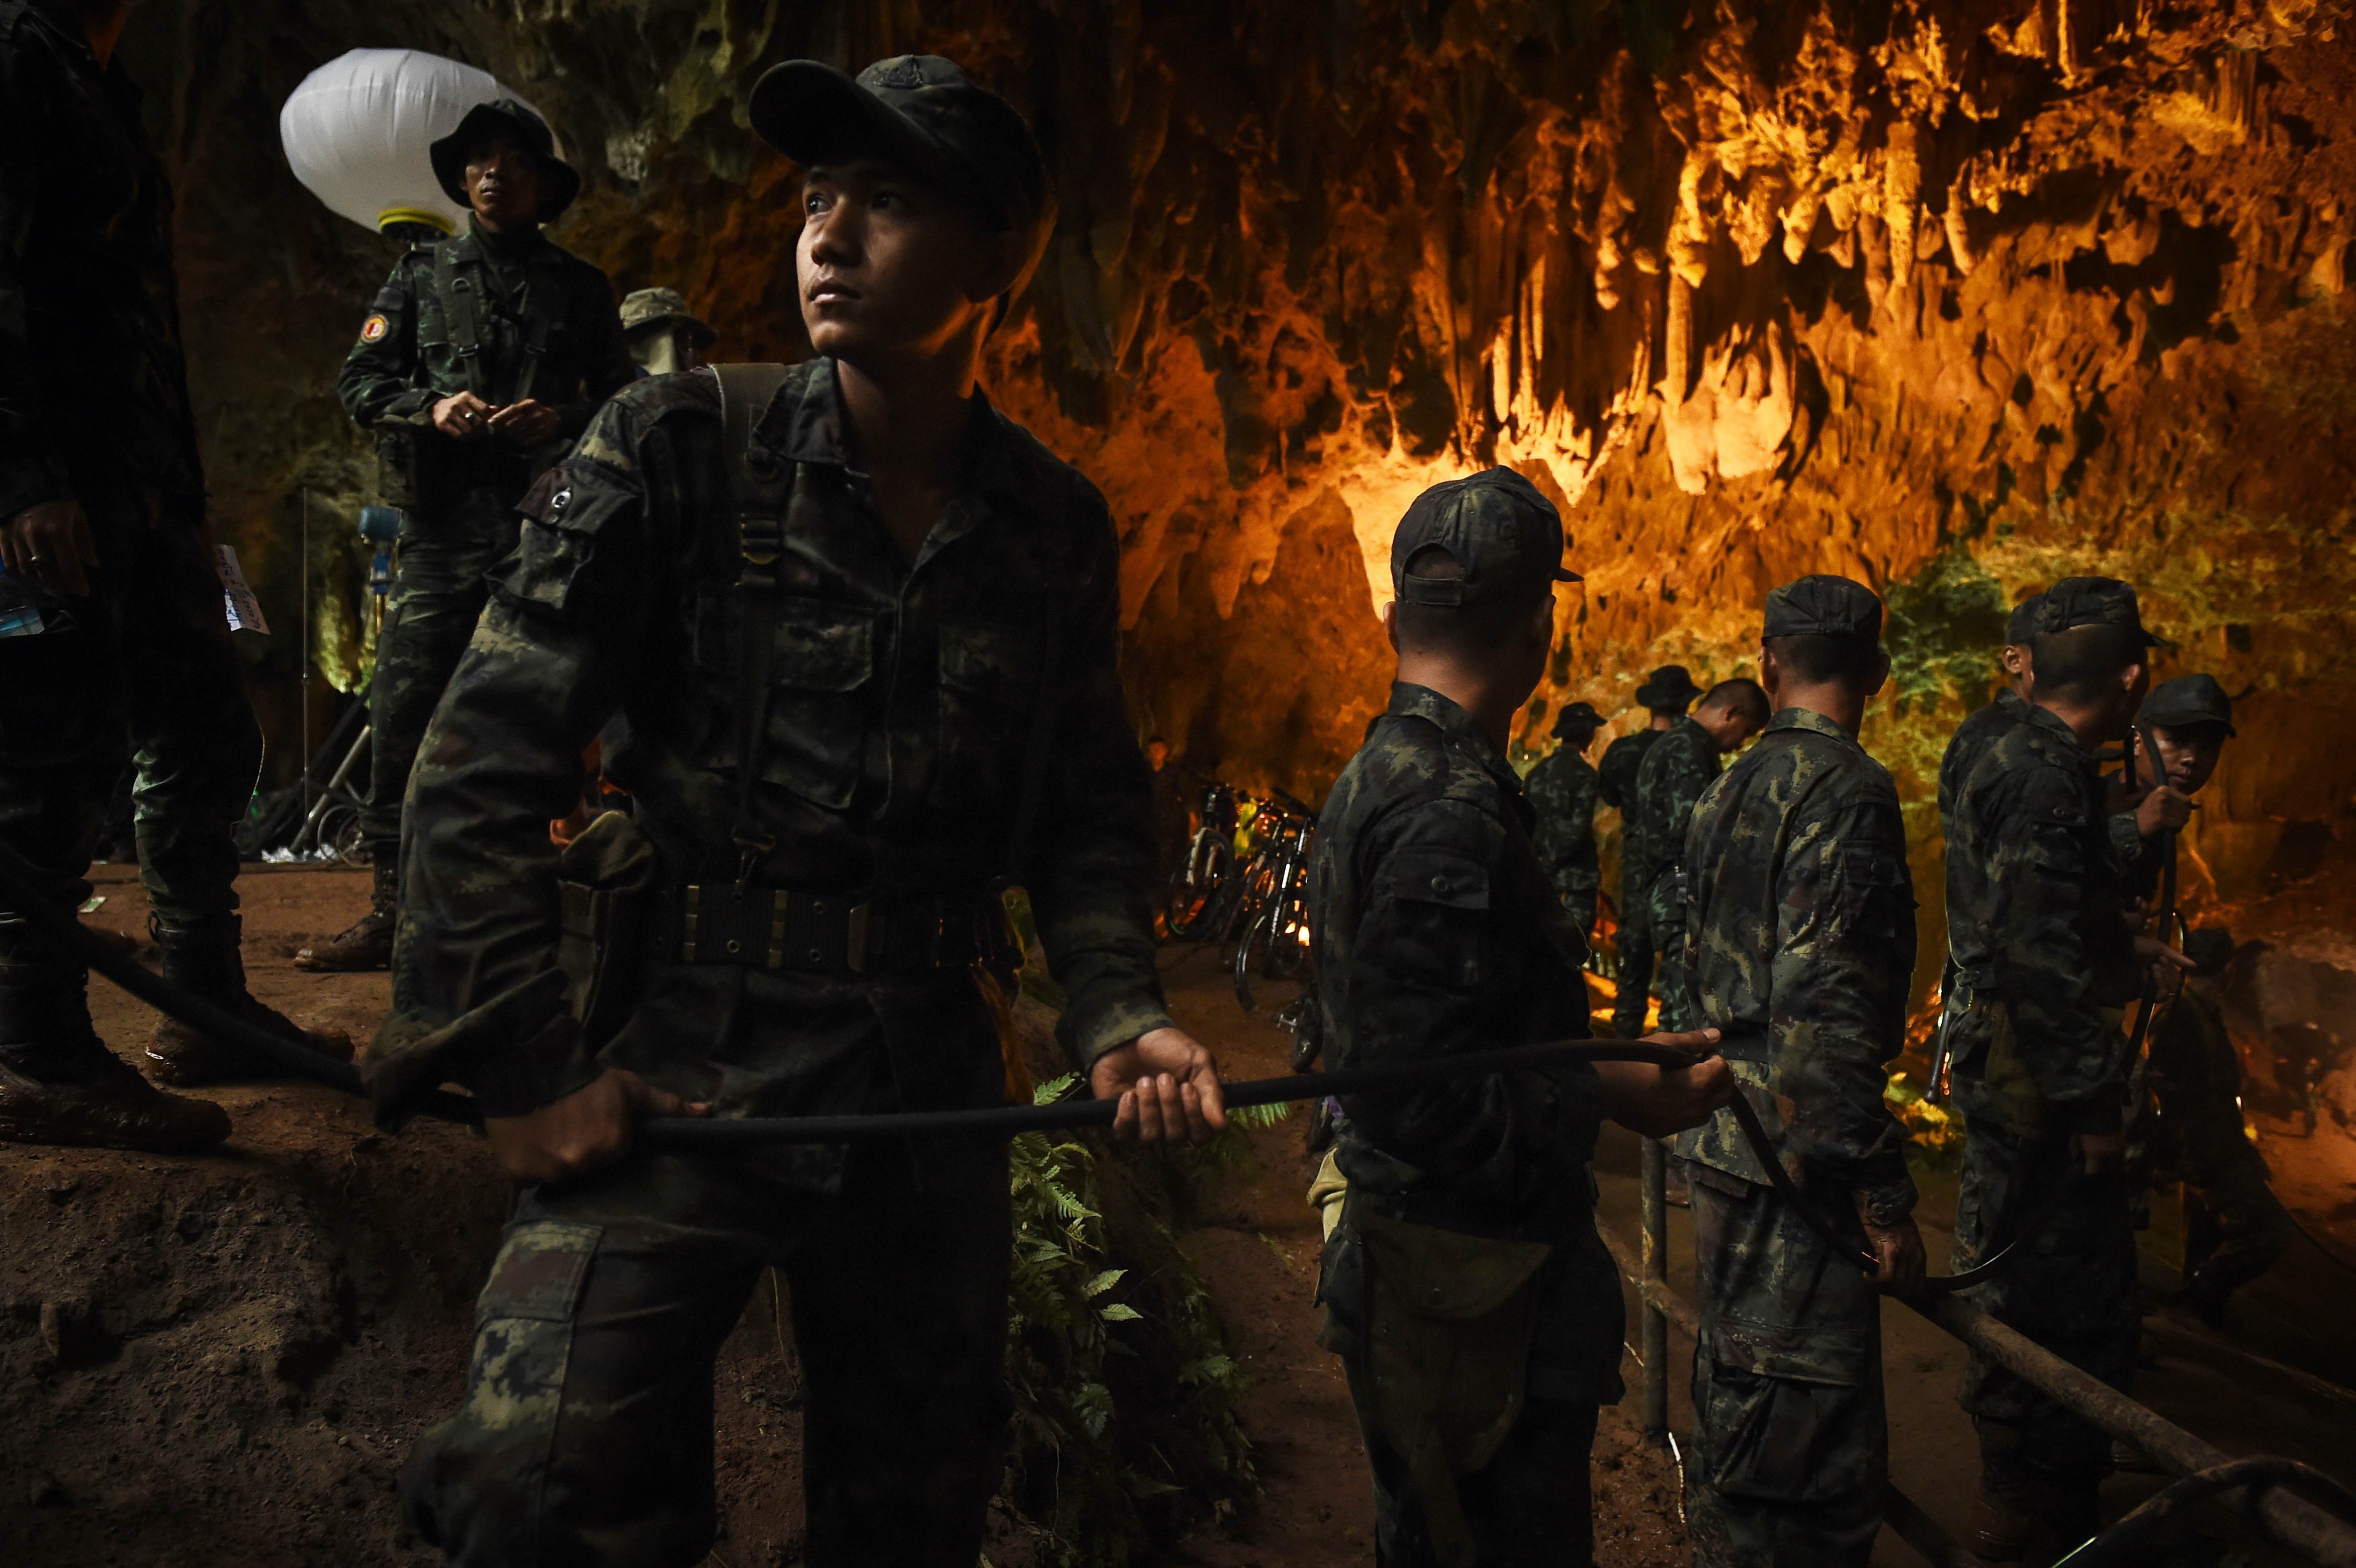 Resgate Na Tailandia Cave 300 027 Thai Cave Rescue Soldier Holding Cable In Lit Cave Gettyimages 984233480 Discovery Estreia «Resgate Na Tailândia». Documentário Sobre O Salvamento Das Crianças E Treinador